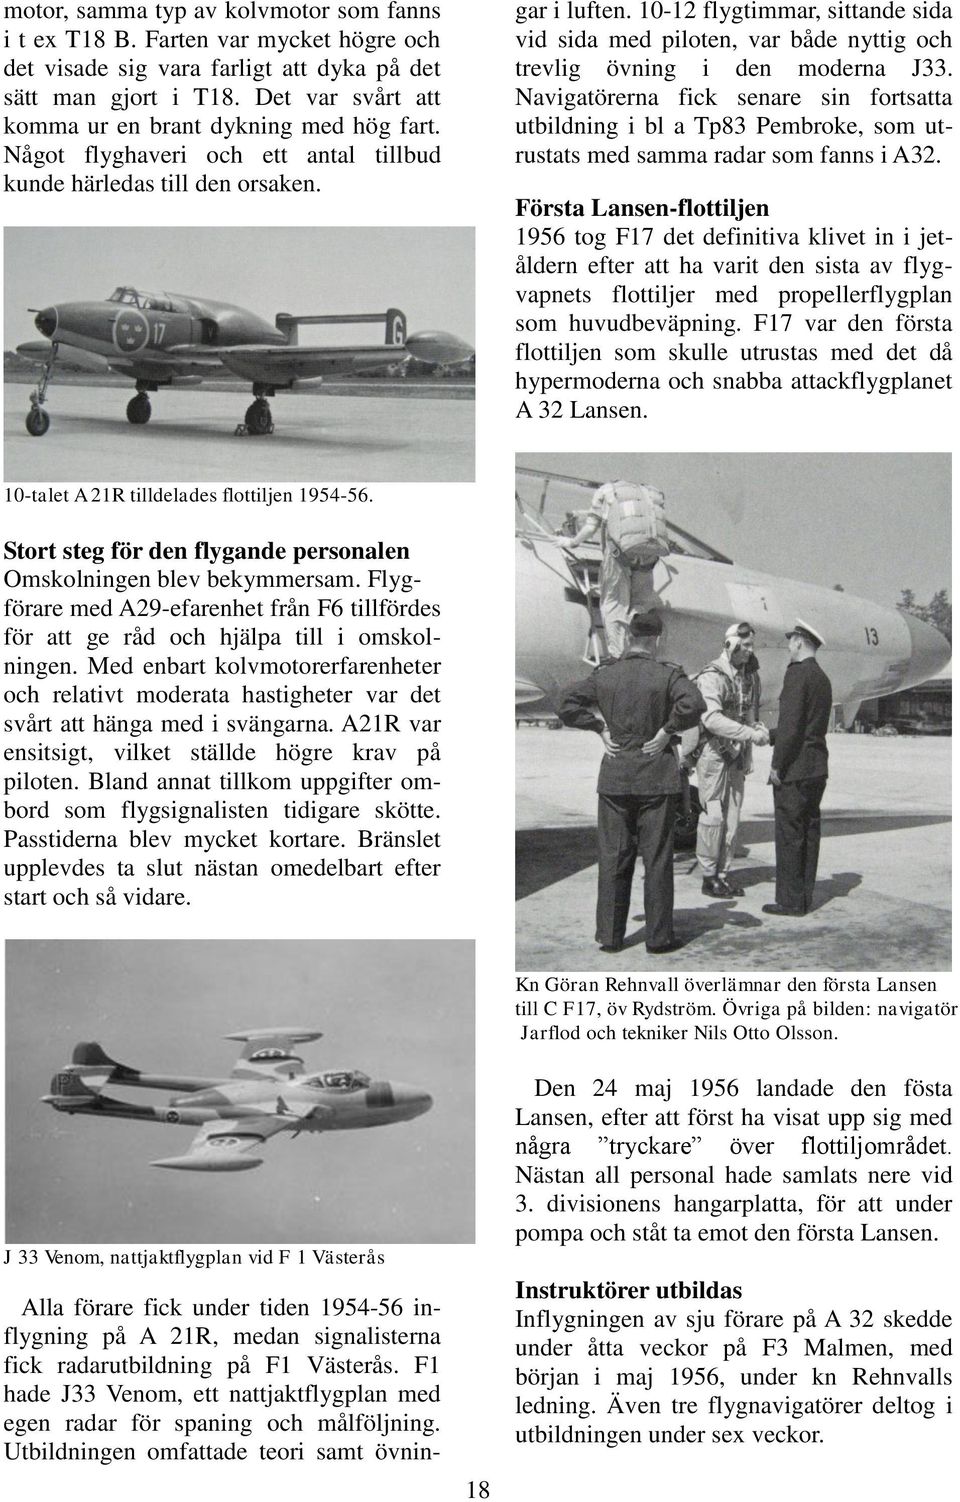 Alla förare fick under tiden 1954-56 inflygning på A 21R, medan signalisterna fick radarutbildning på F1 Västerås. F1 hade J33 Venom, ett nattjaktflygplan med egen radar för spaning och målföljning.